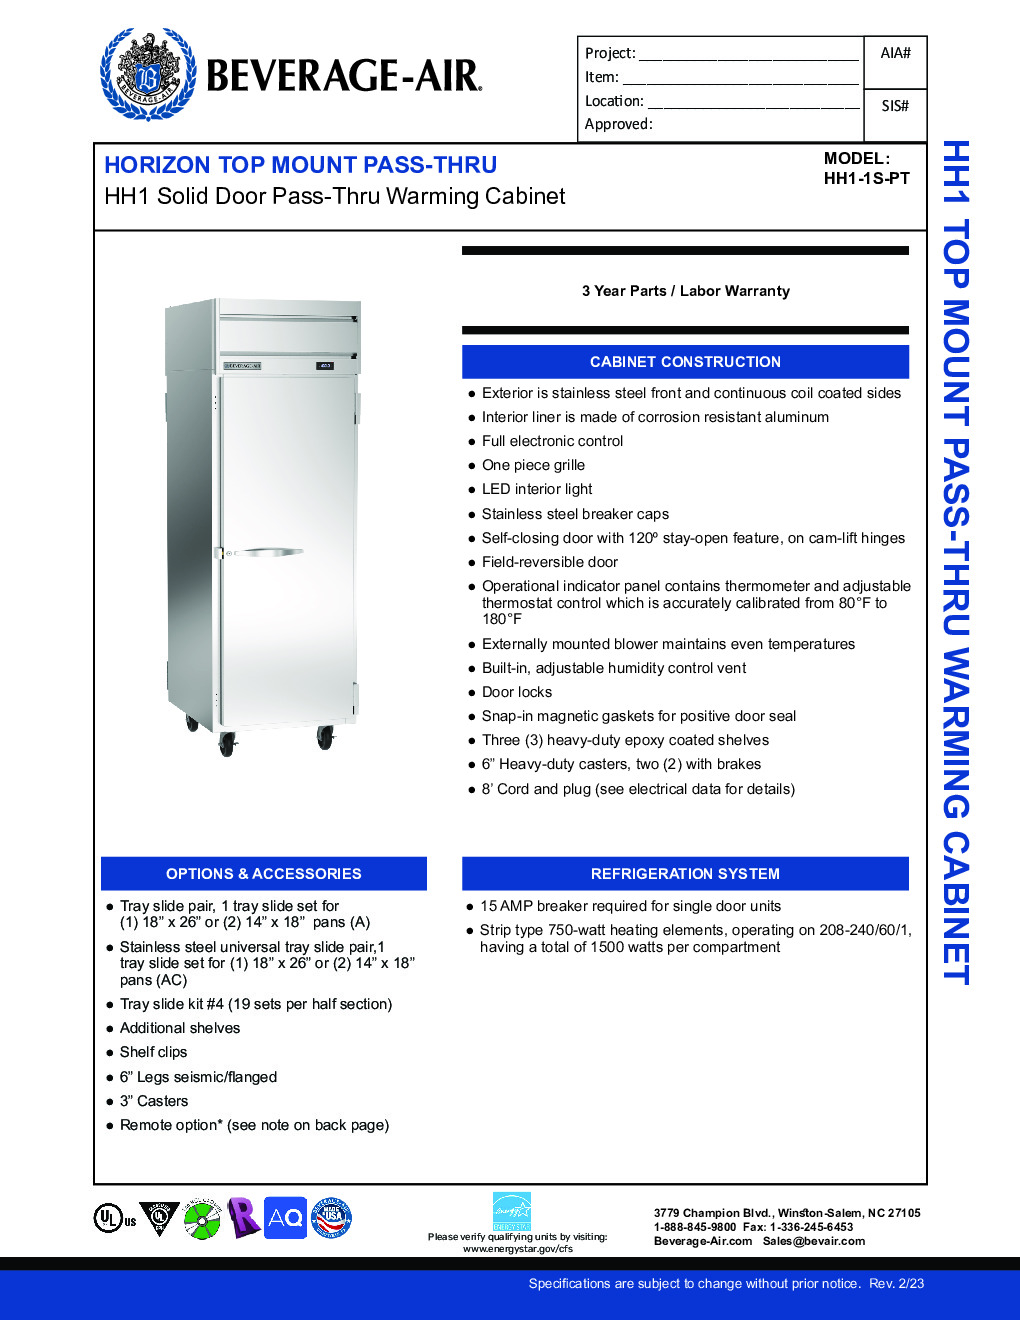 Beverage Air HH1-1S-PT Pass-Thru Heated Cabinet